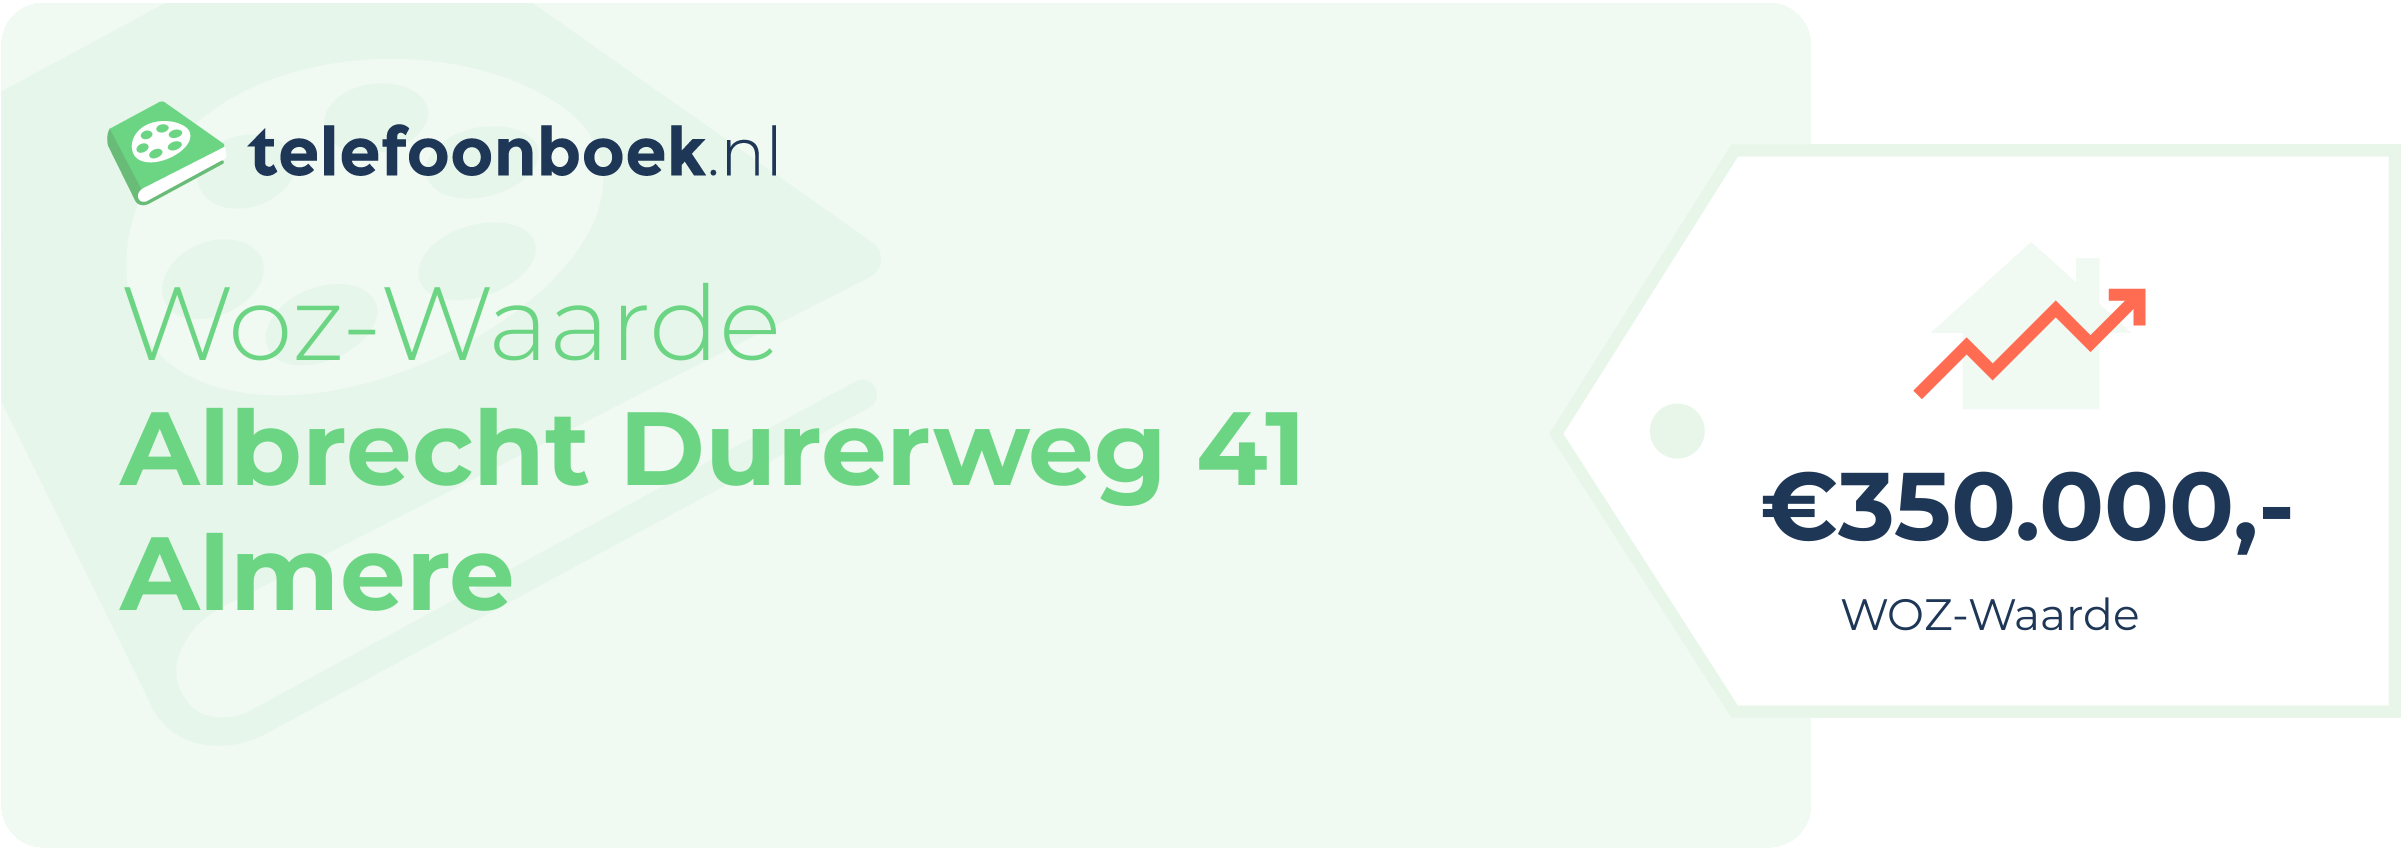 WOZ-waarde Albrecht Durerweg 41 Almere